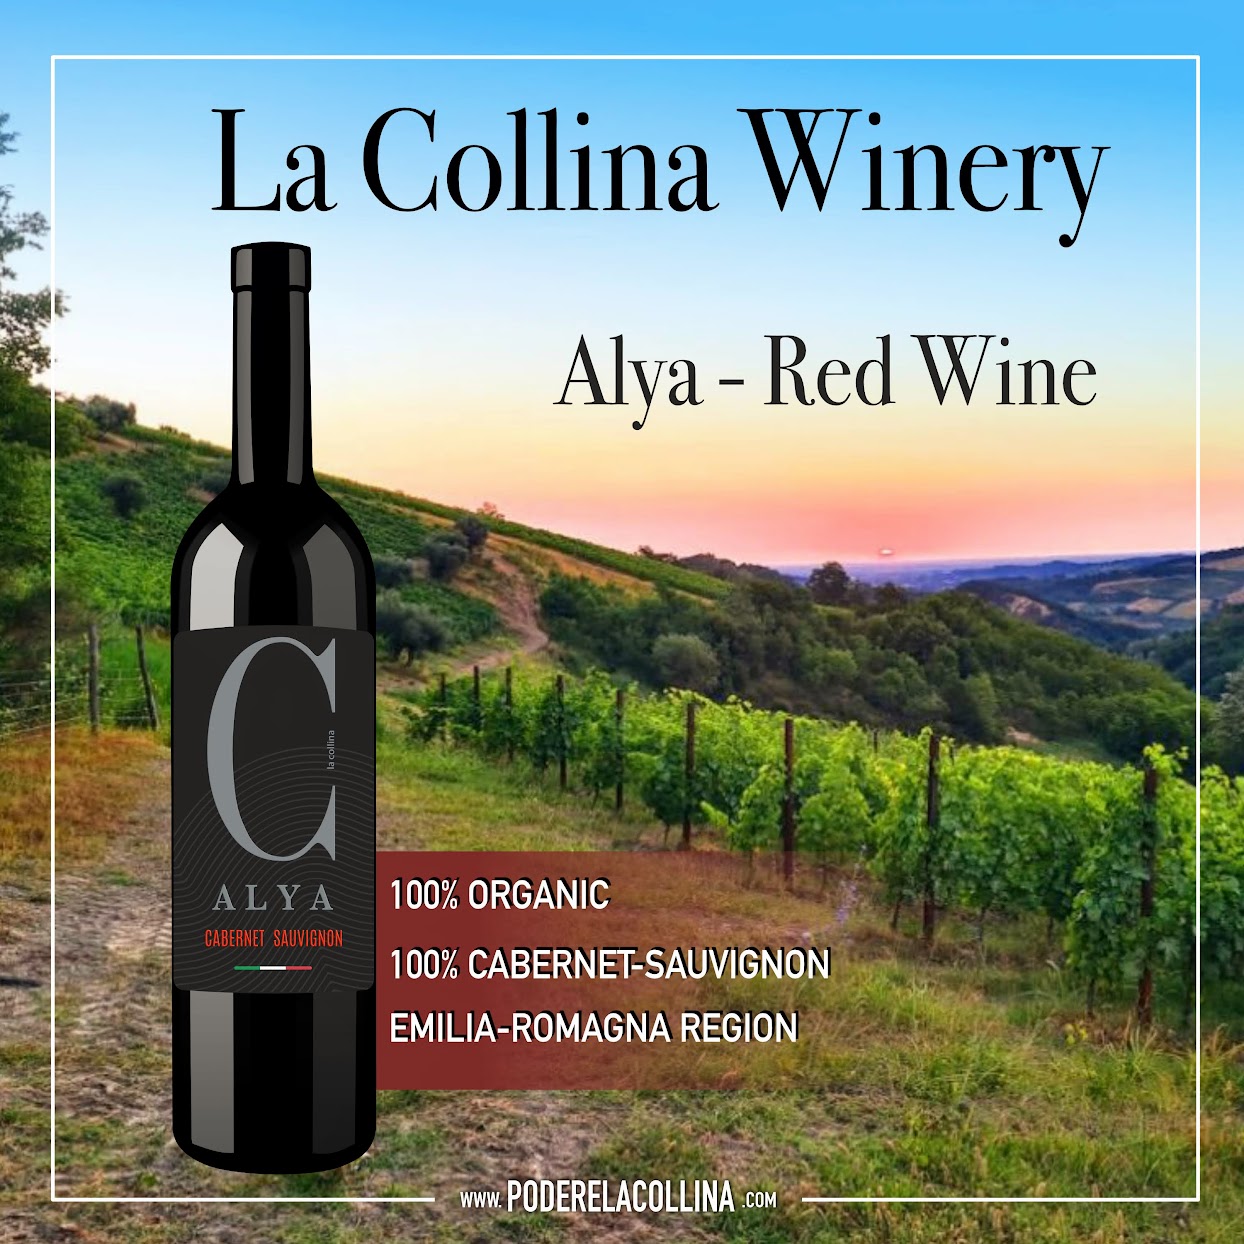 Alya-Red Wine - Cabernet-Sauvignon - La Collina Winery from Brisighella, Emilia-Romagna region in Italy - Online Wine Shop